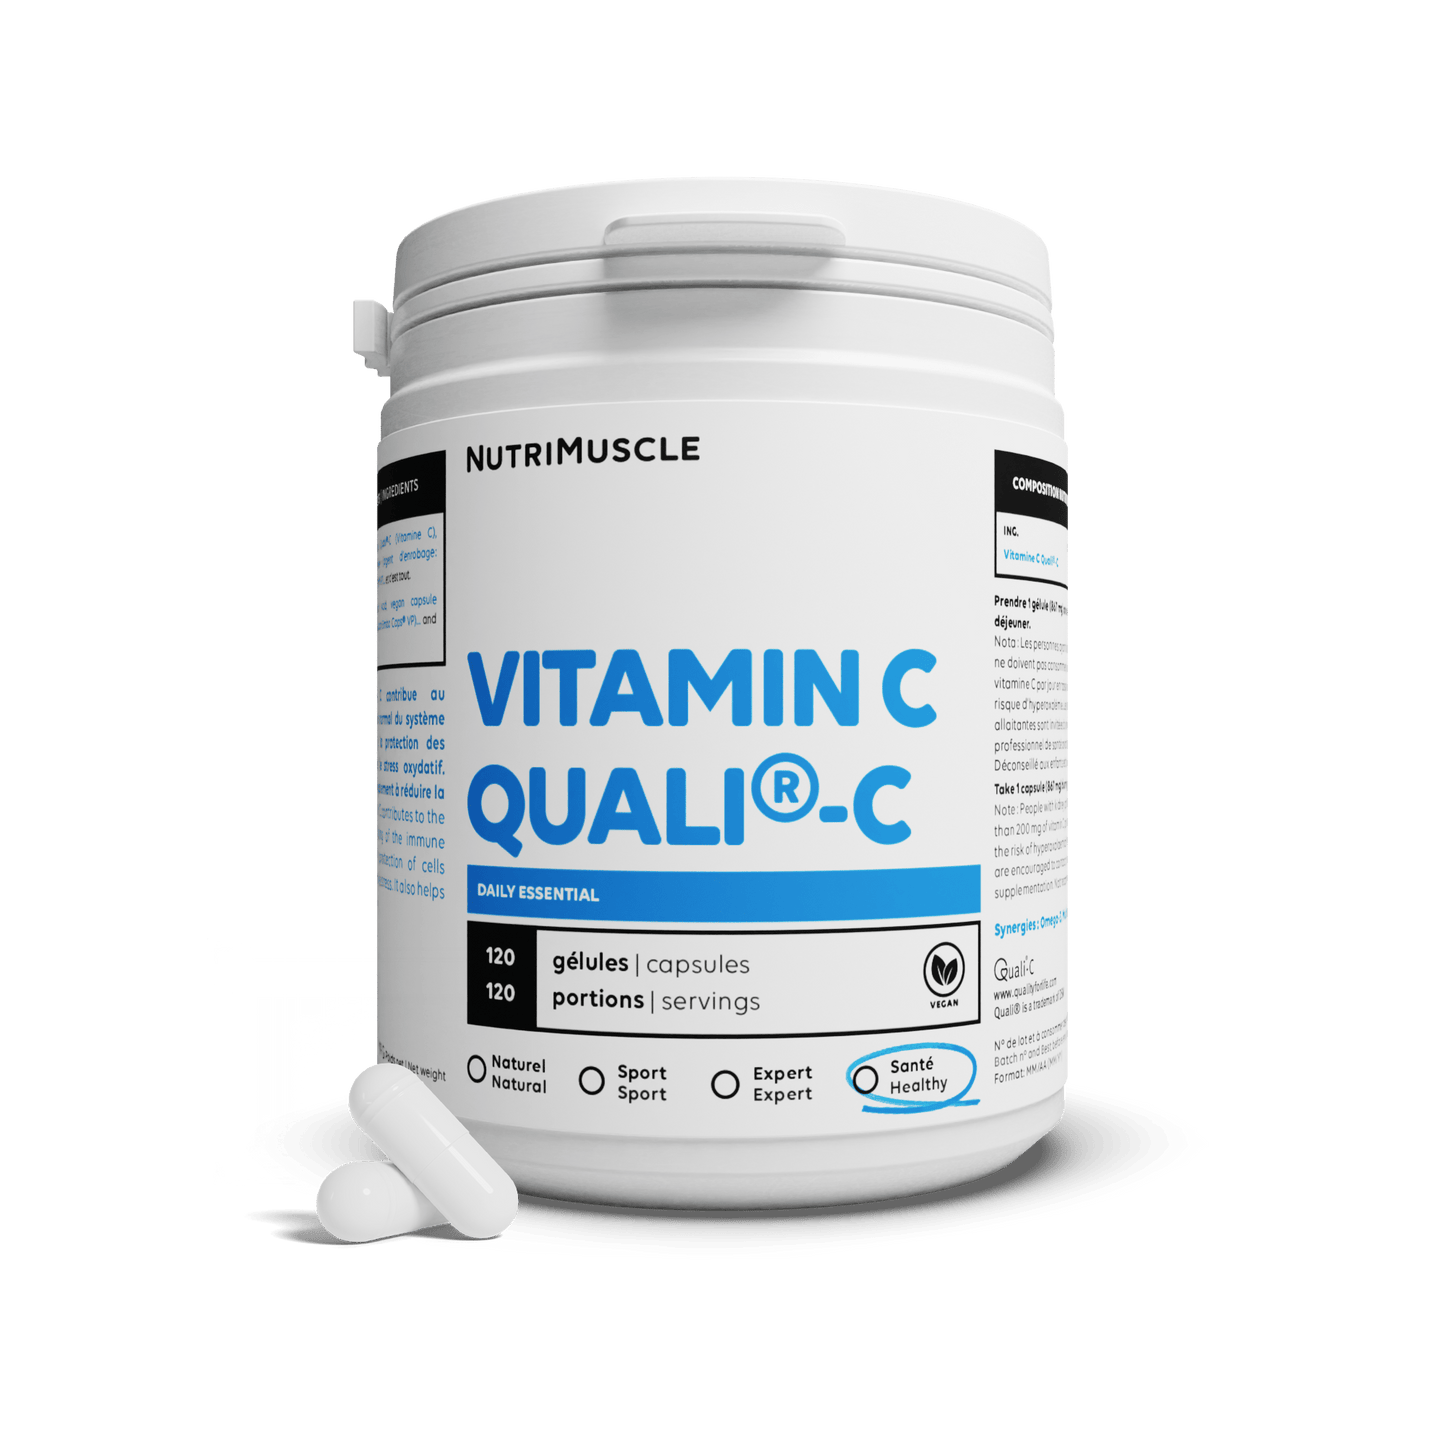 Nutrimuscle 120 gélules Vitamine C Quali®C en gélules